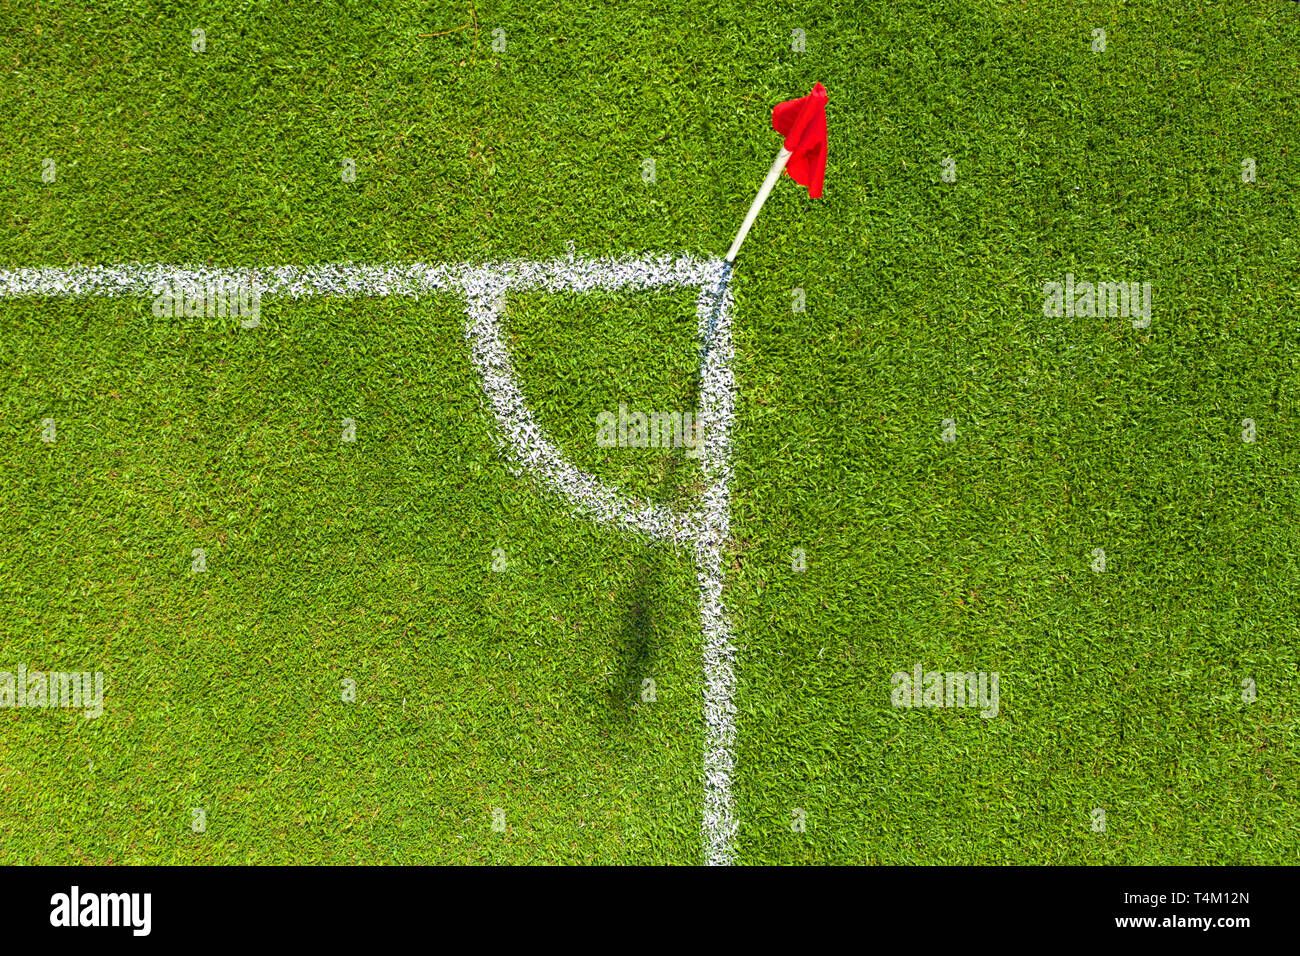 Prospettiva alternativa di un calcio d'angolo con una pole bianca e una bandiera rossa. Foto Stock